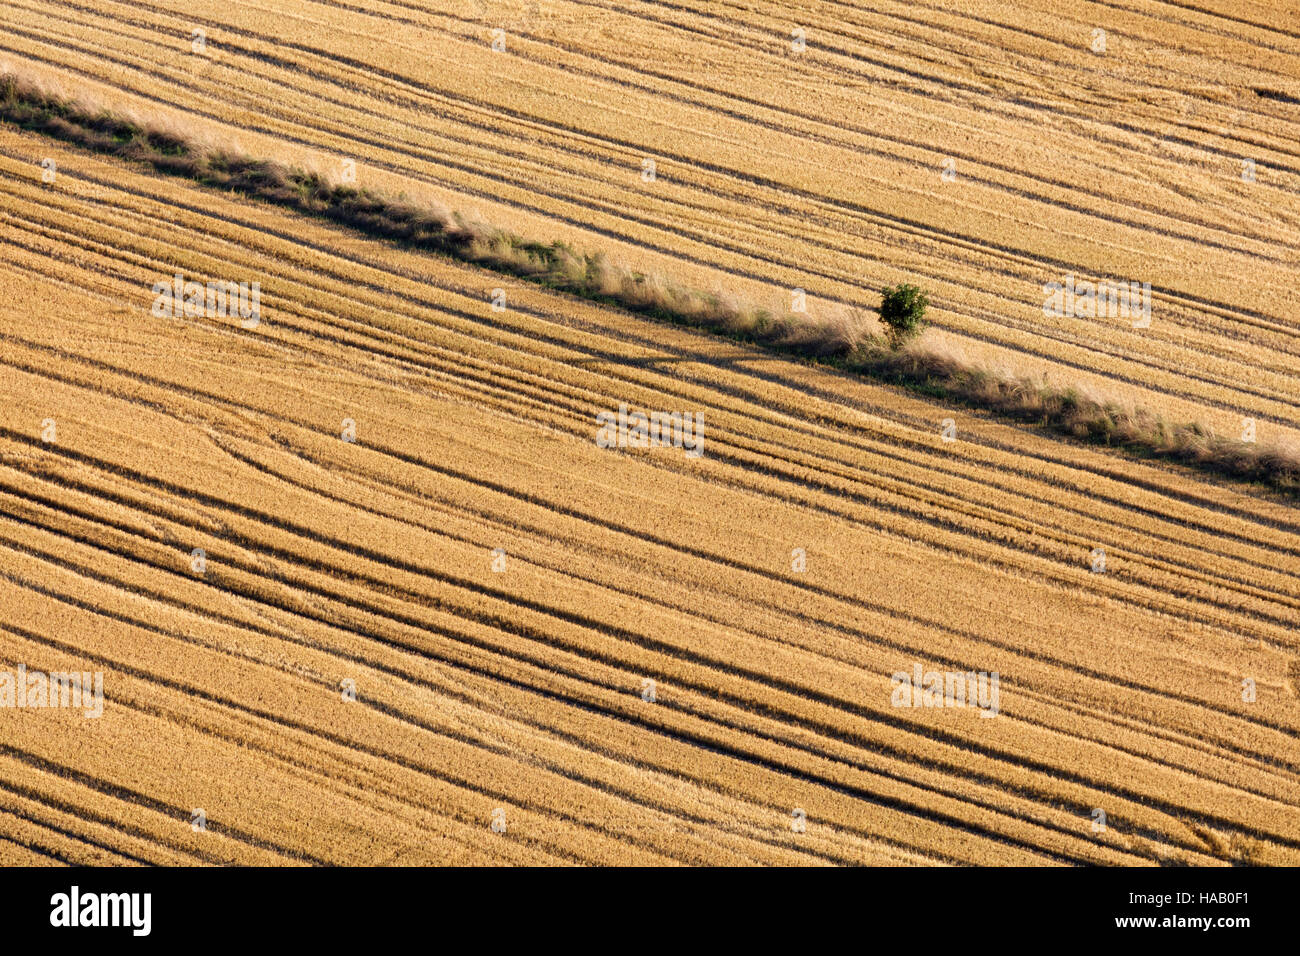 Elevata immagine astratta di un lone tree in una siepe tra due campi che appaiono come corduroy dopo il raccolto Foto Stock